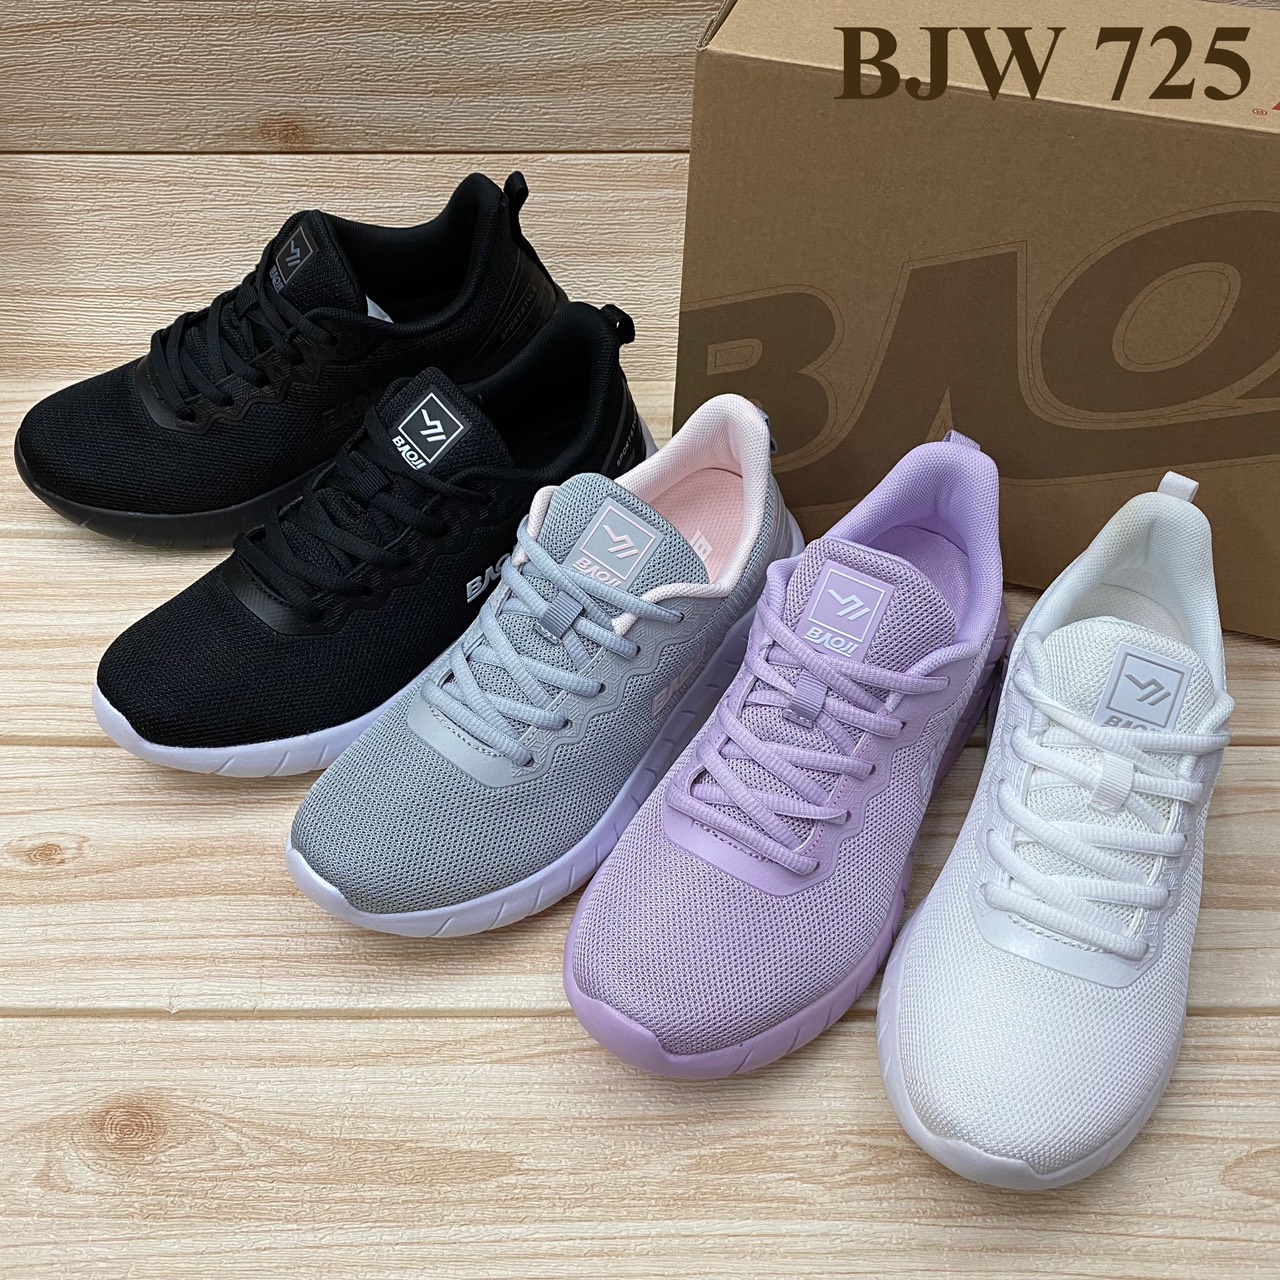 Baoji BJW 725 รองเท้าสนิกเกอร์(37-41) สีดำ/ขาว/เทา/ดำขาว/ม่วง